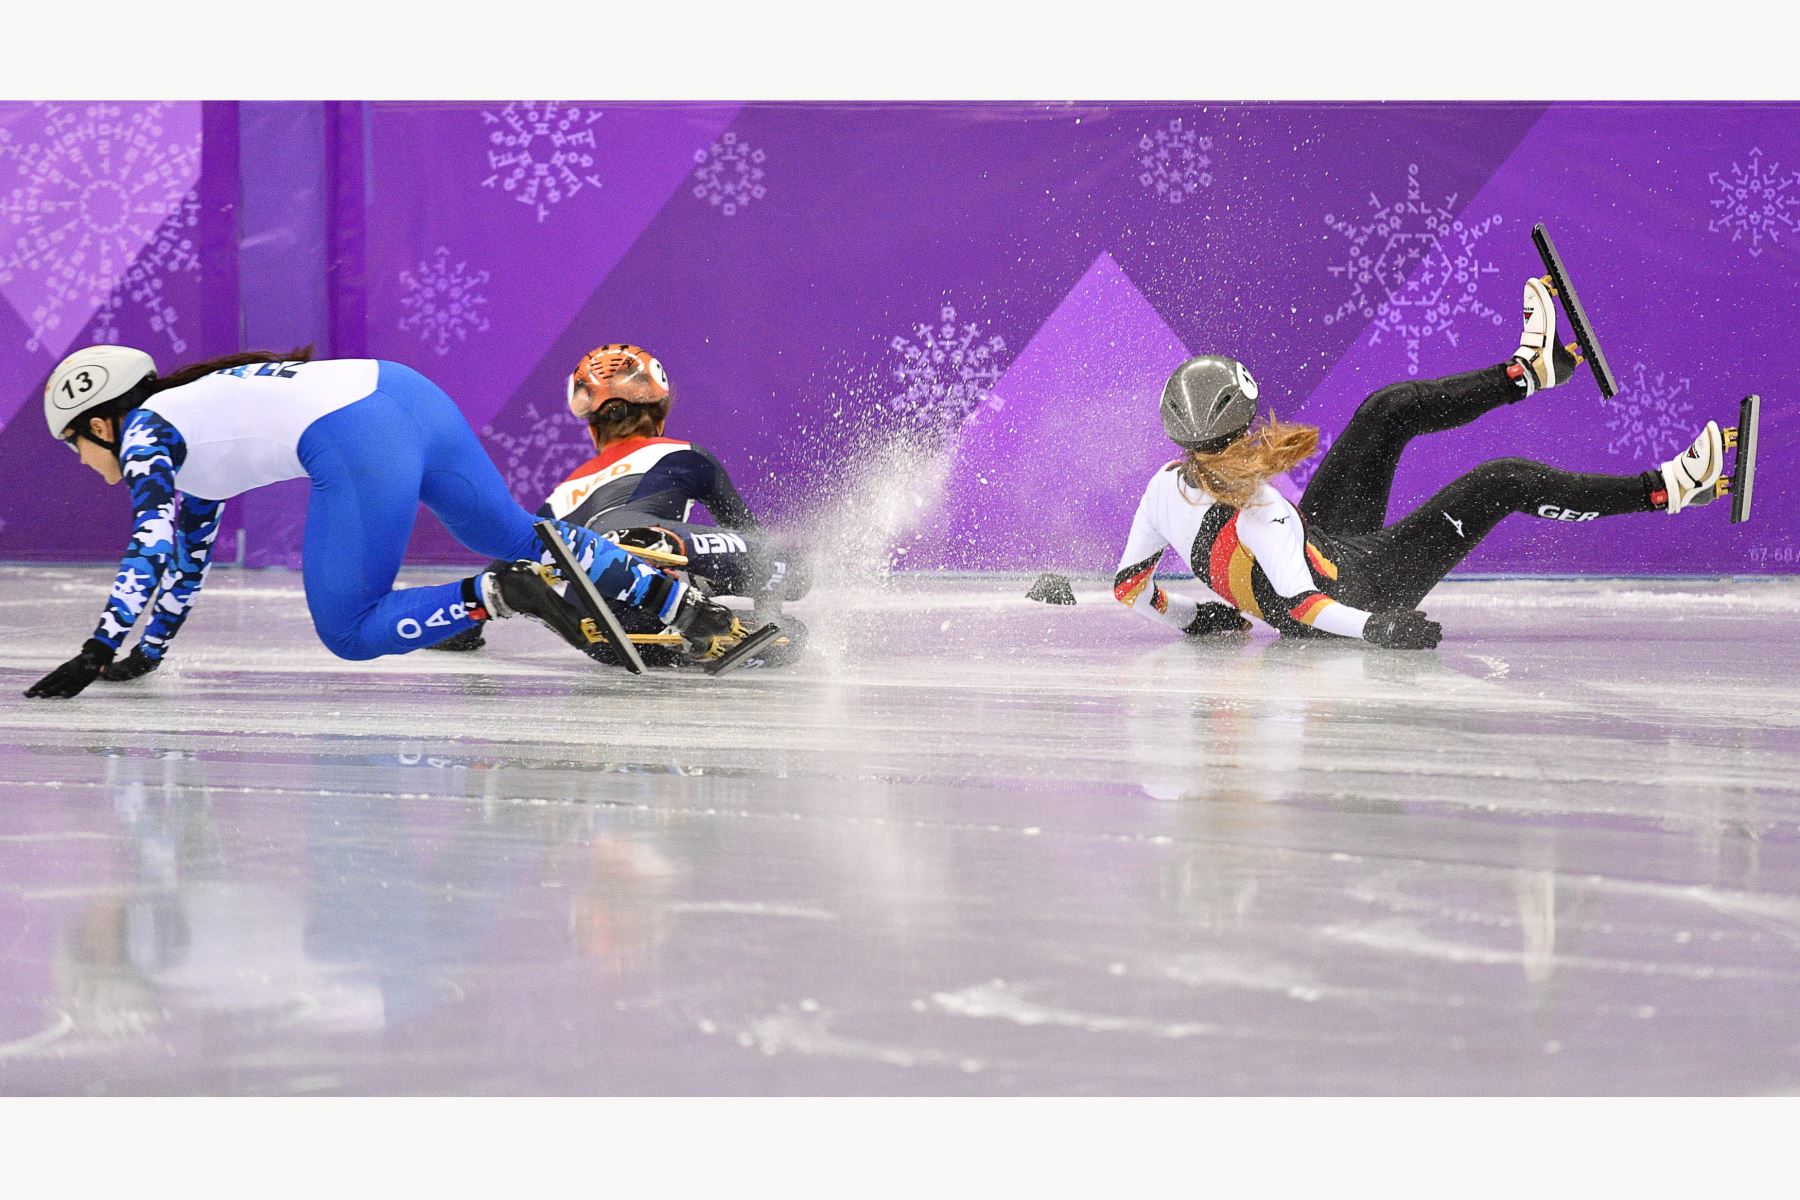 La rusa Sofía Prosvirnova, la holandesa Yara van Kerkhof y la alemana Anna Seidel se accidentan durante la competencia de velocidad de 1,000 metros femeninos. Foto: AFP